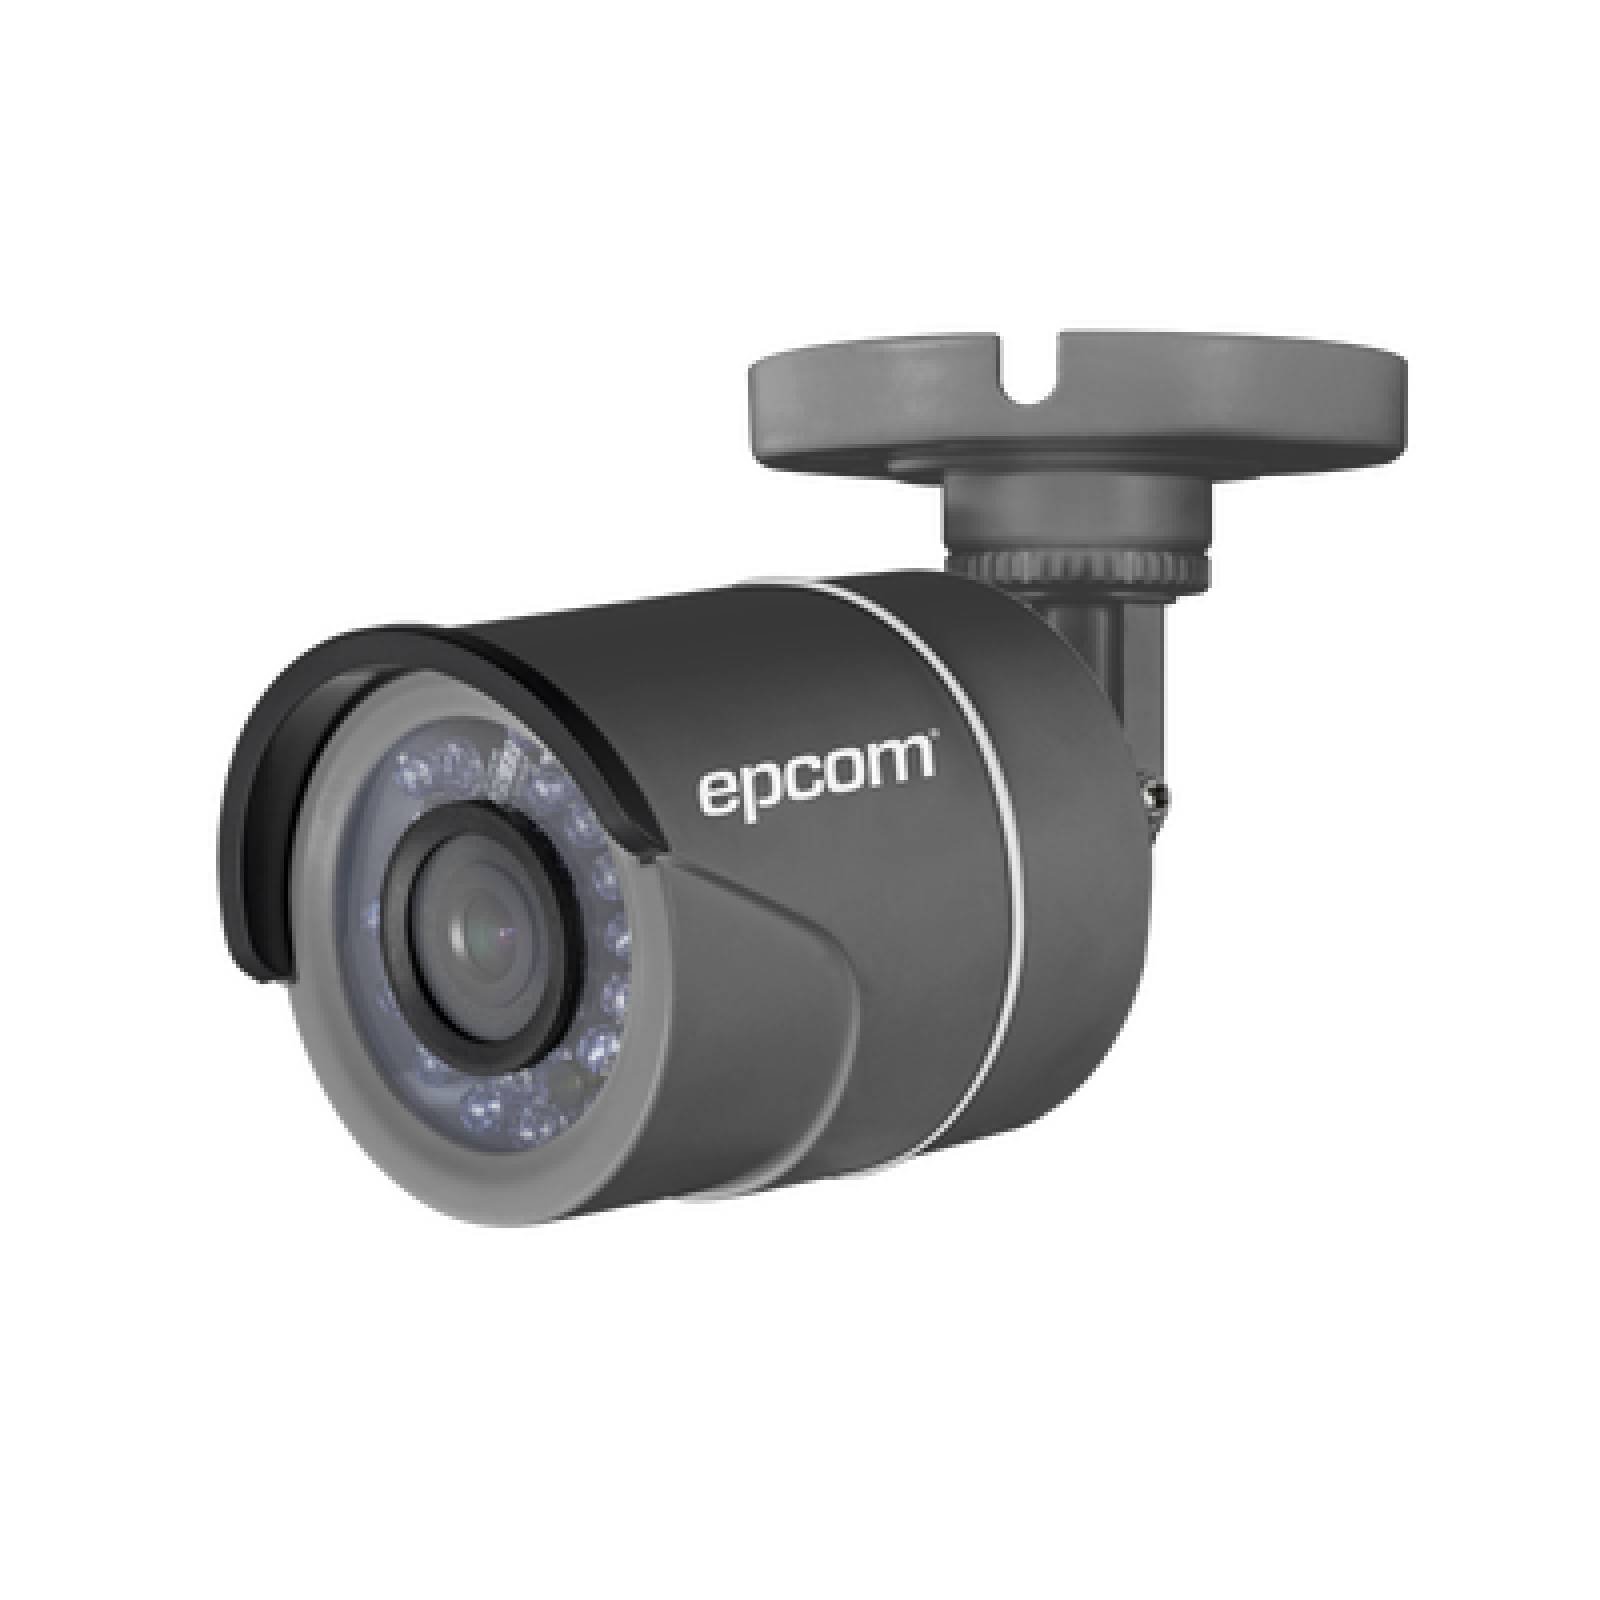 Cámara de videovigilancia tipo bala 1 MEGAPIXEL 720P(1 MEGAPIXEL) EPCOM   EPCOM